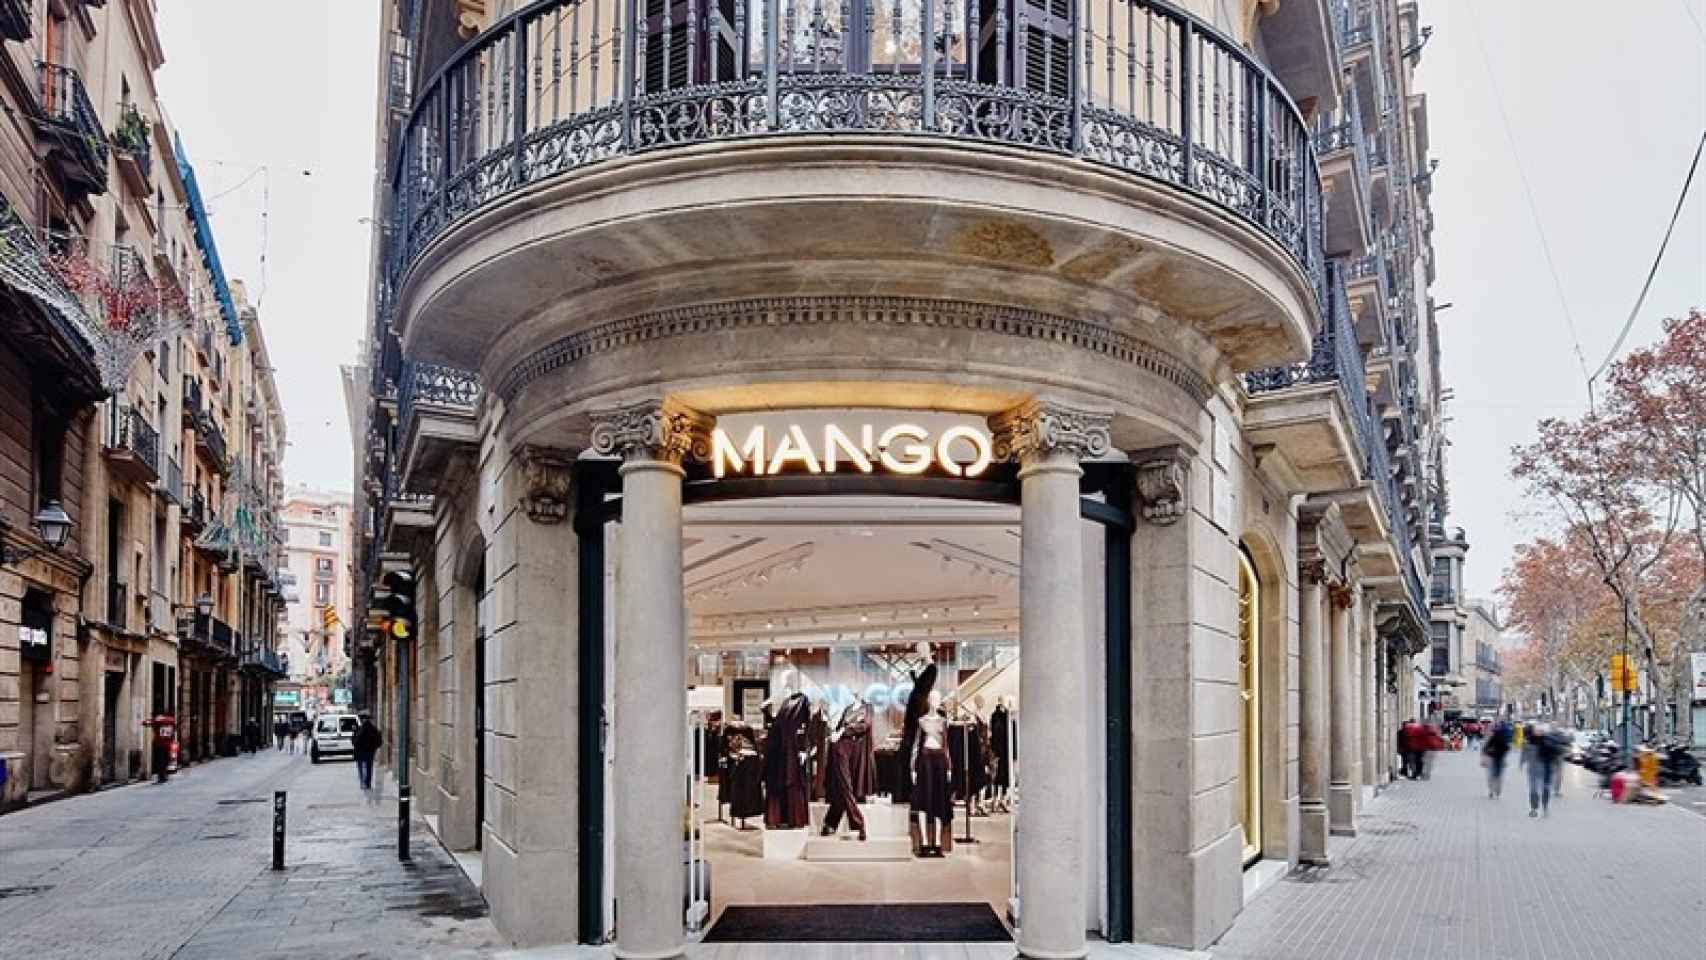 Imagen de una tienda de Mango / EUROPA PRESS